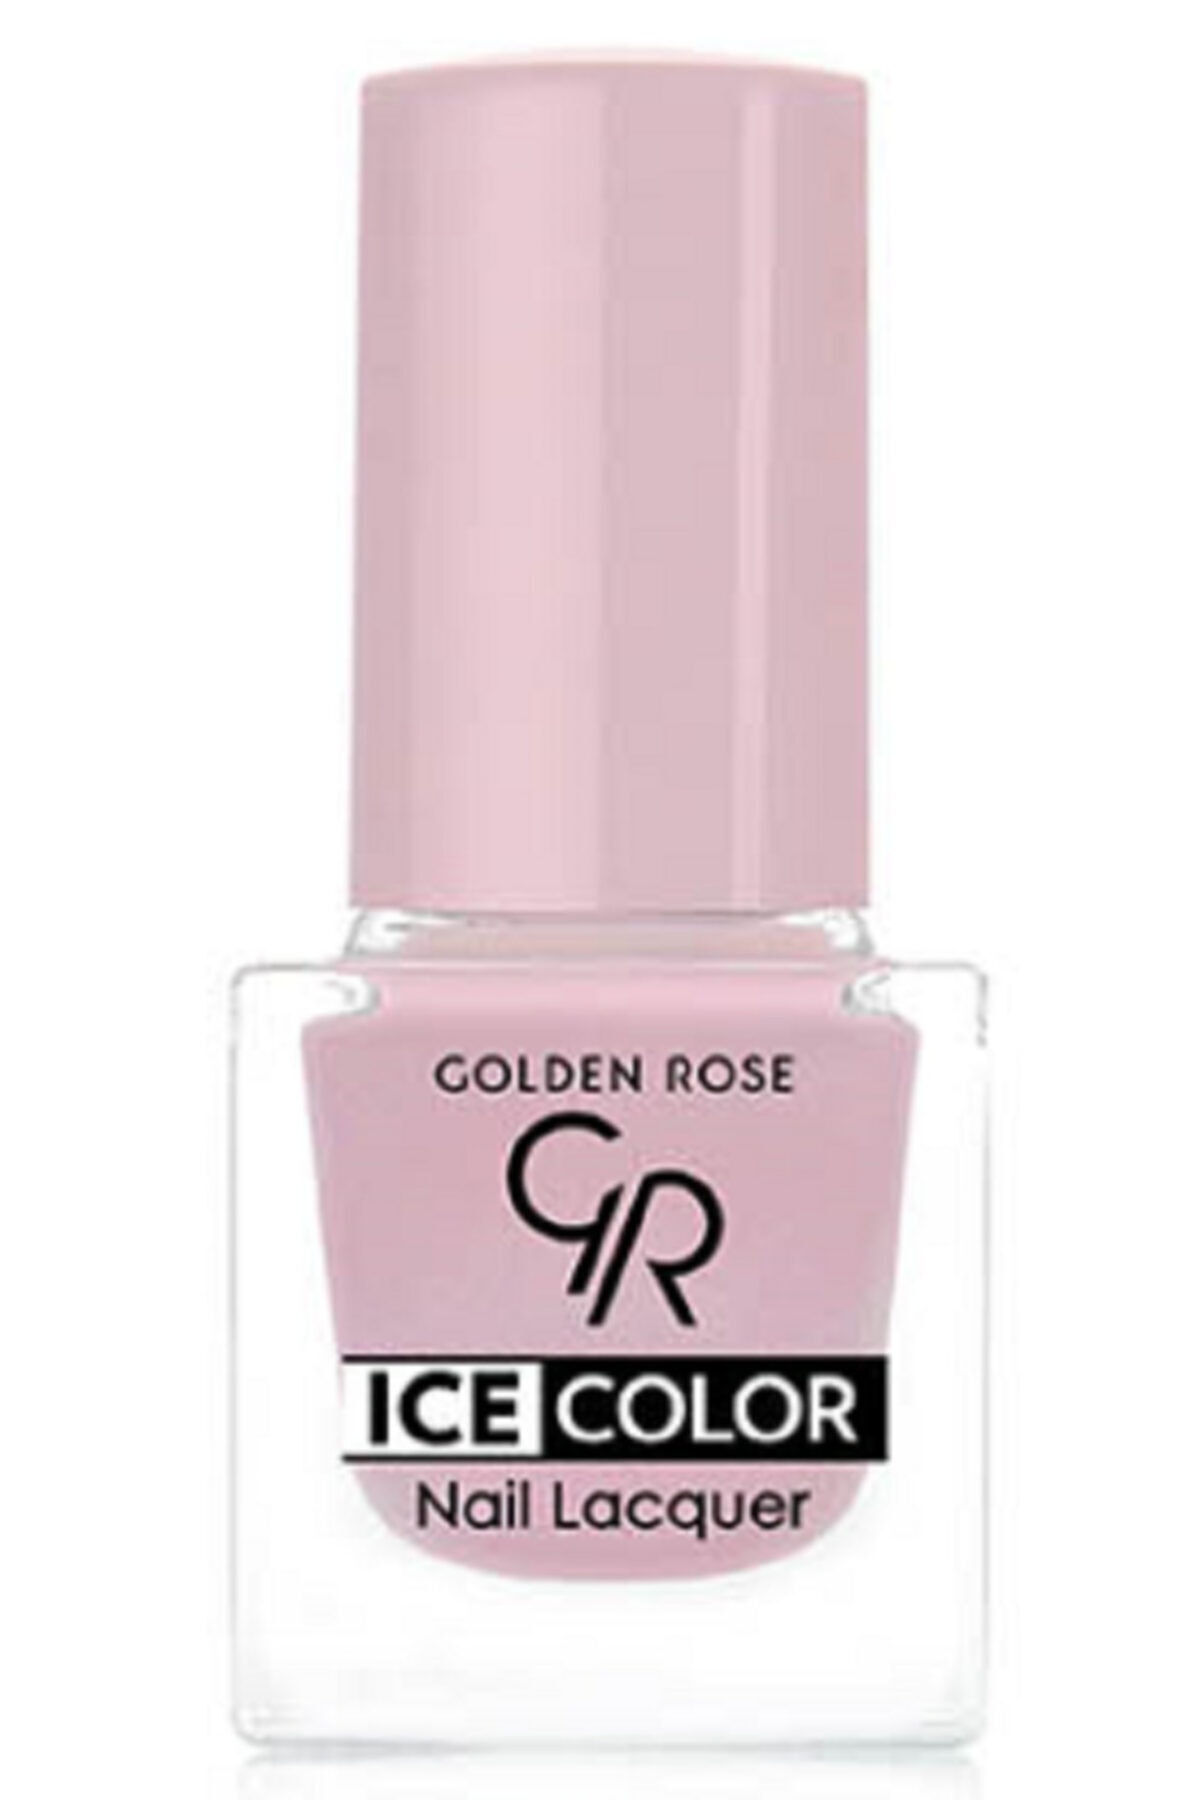 لاک ناخن یخی آیس چیک ICE شماره 157 رنگ خاکستری گلدن رز Golden Rose